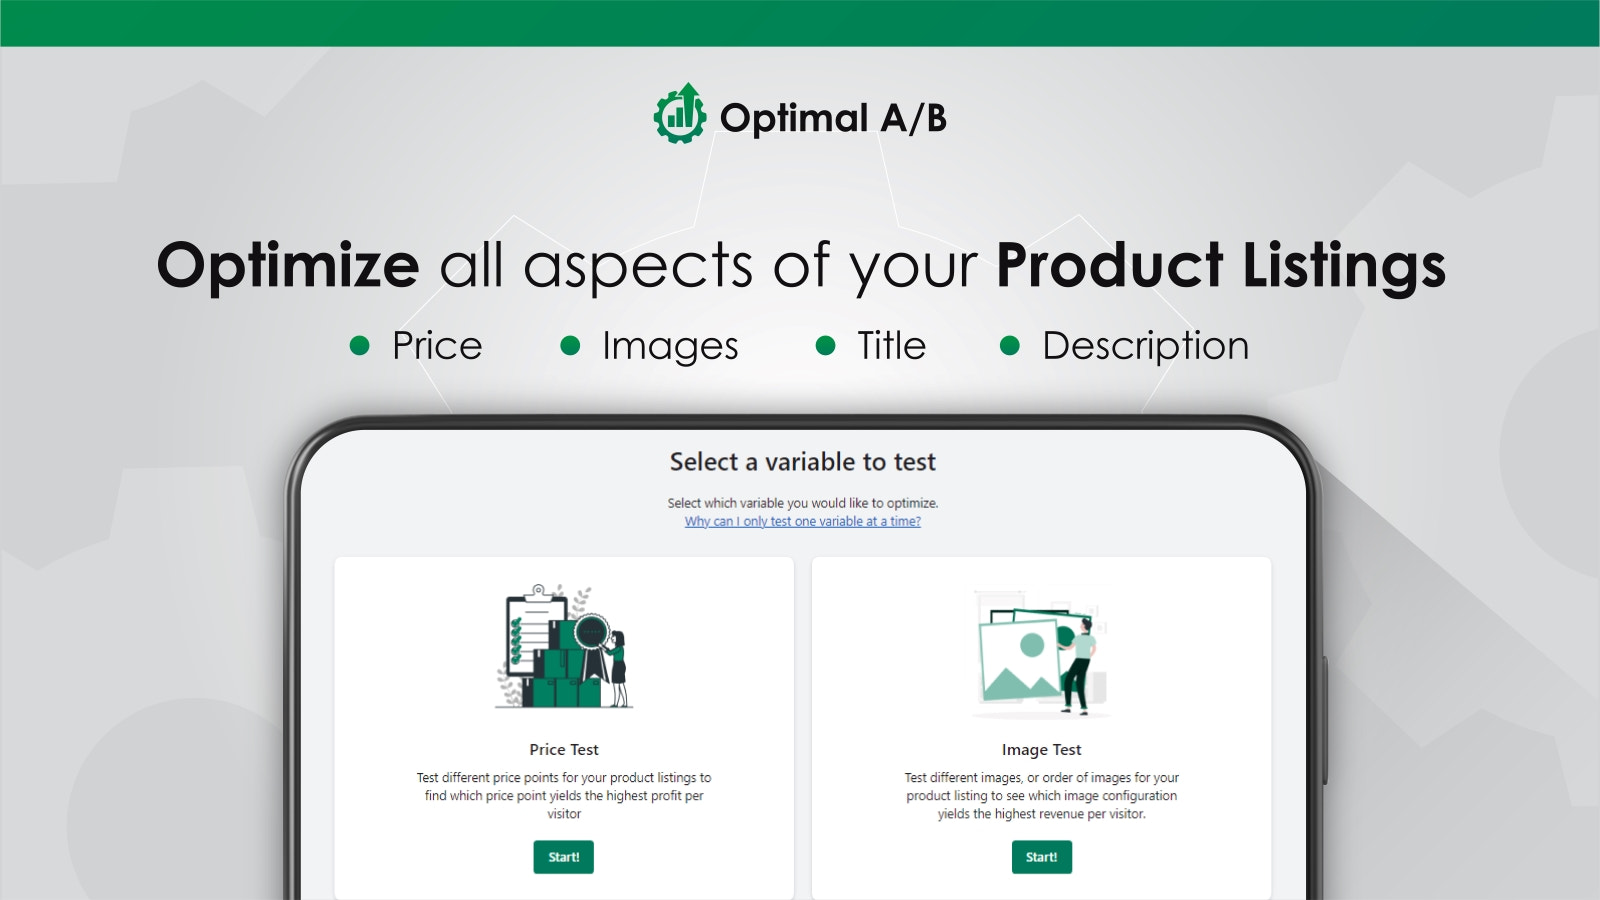 AB-testa pris, bilder, titel & beskrivning med Optimal A/B